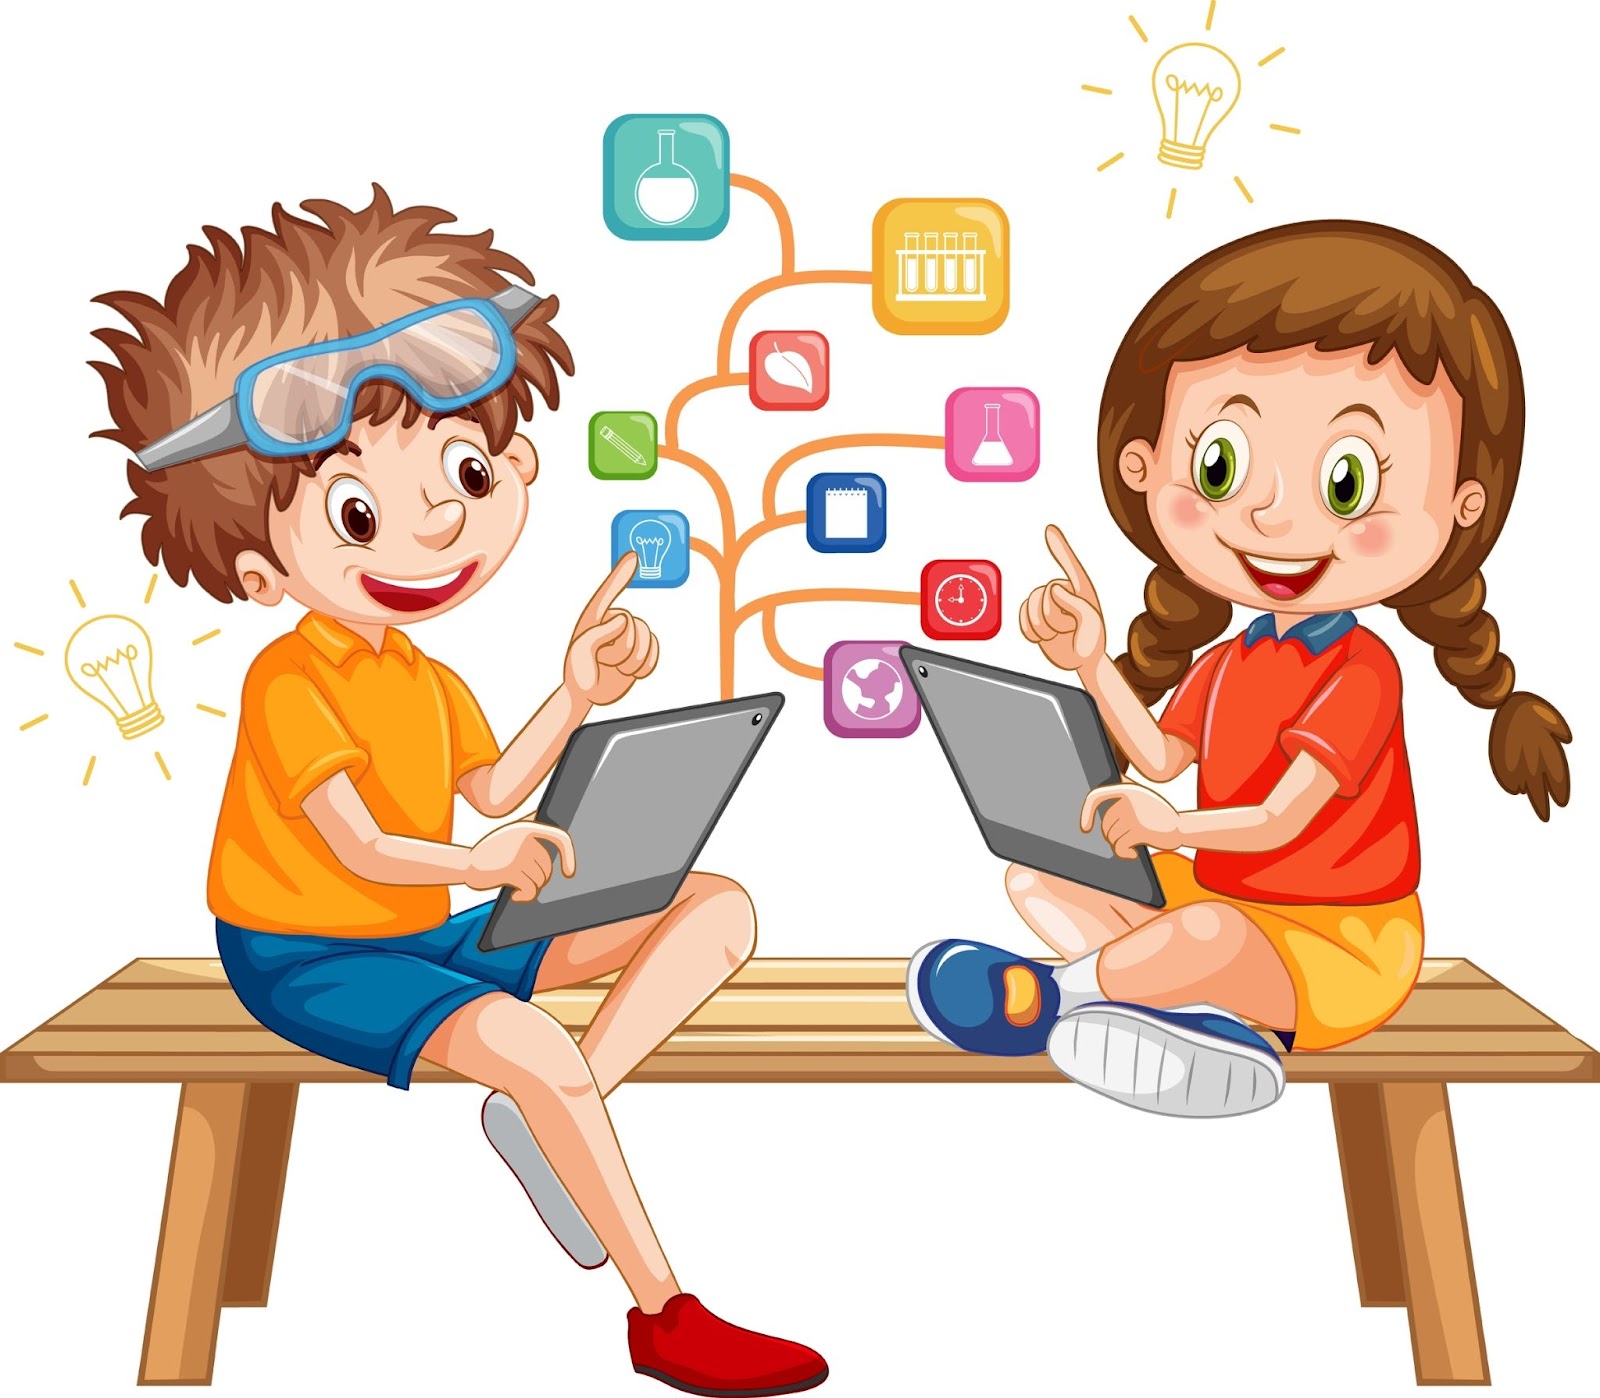 Tabletli çocuklar, problem çözme, yaratıcılık, dijital beceriler